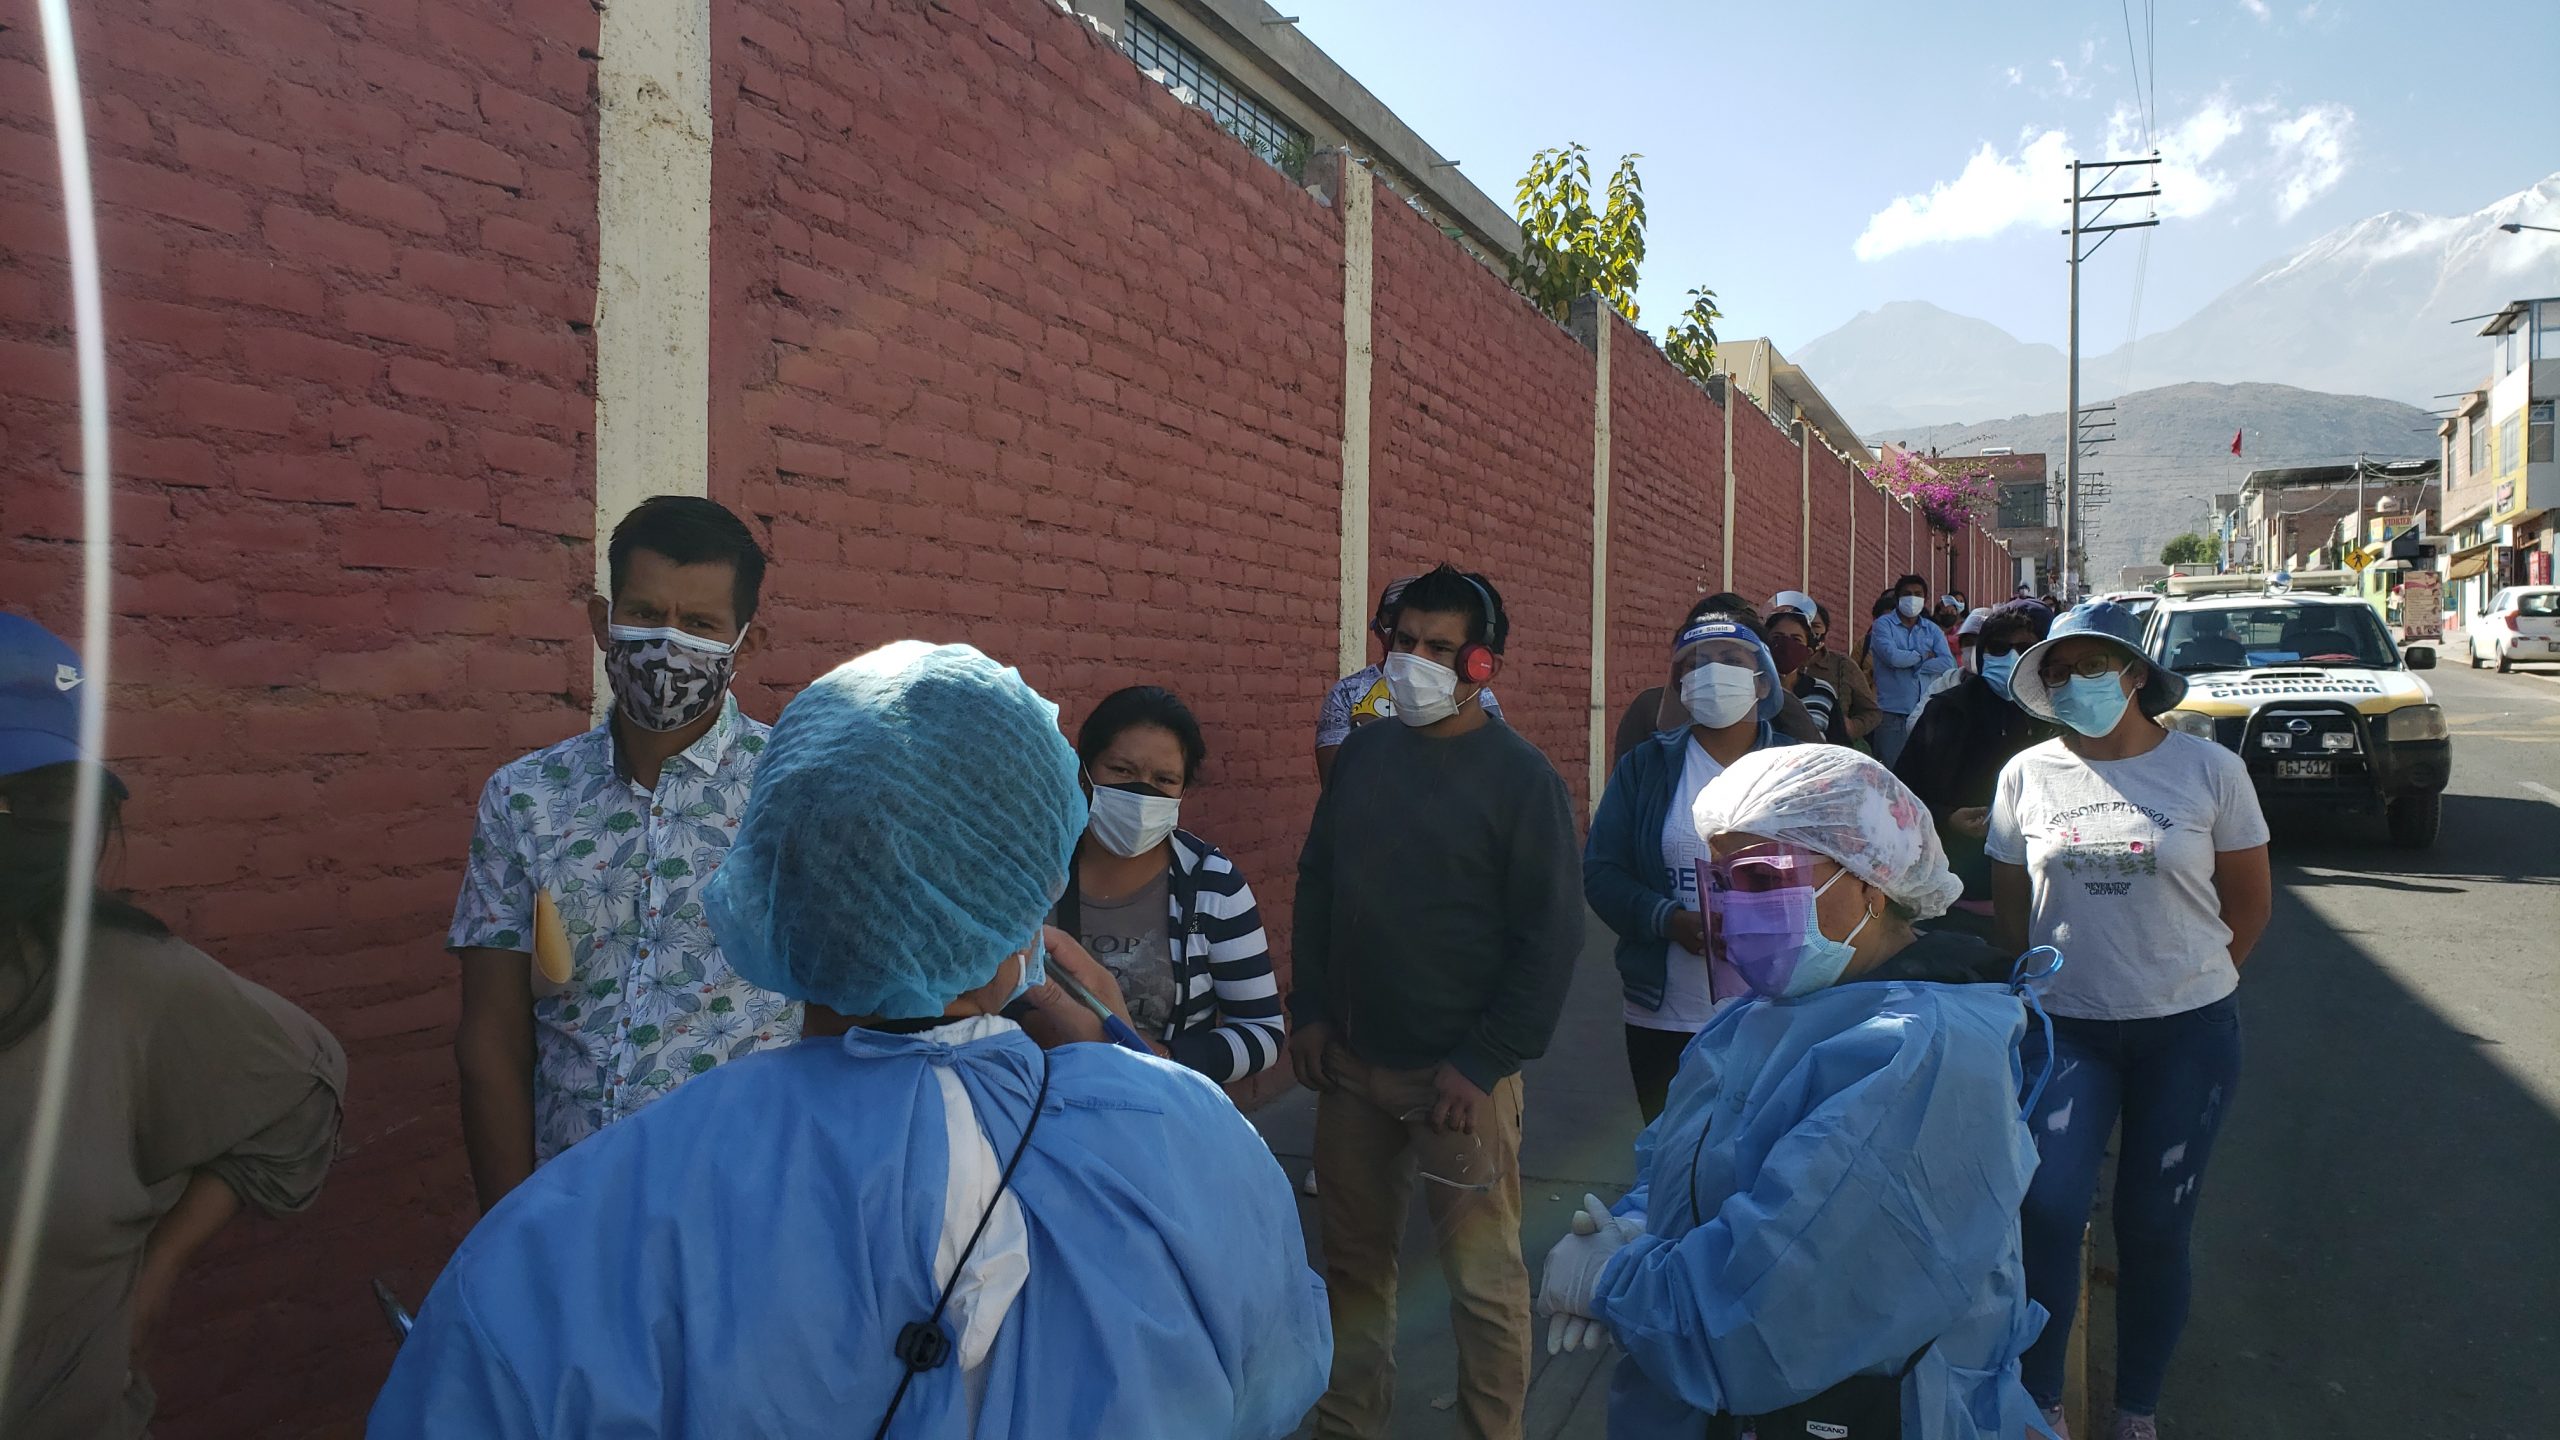 Personal de salud indicó no garantizar continuidad de vacunación contra el covid para el jueves en colegio de Cerro Colorado